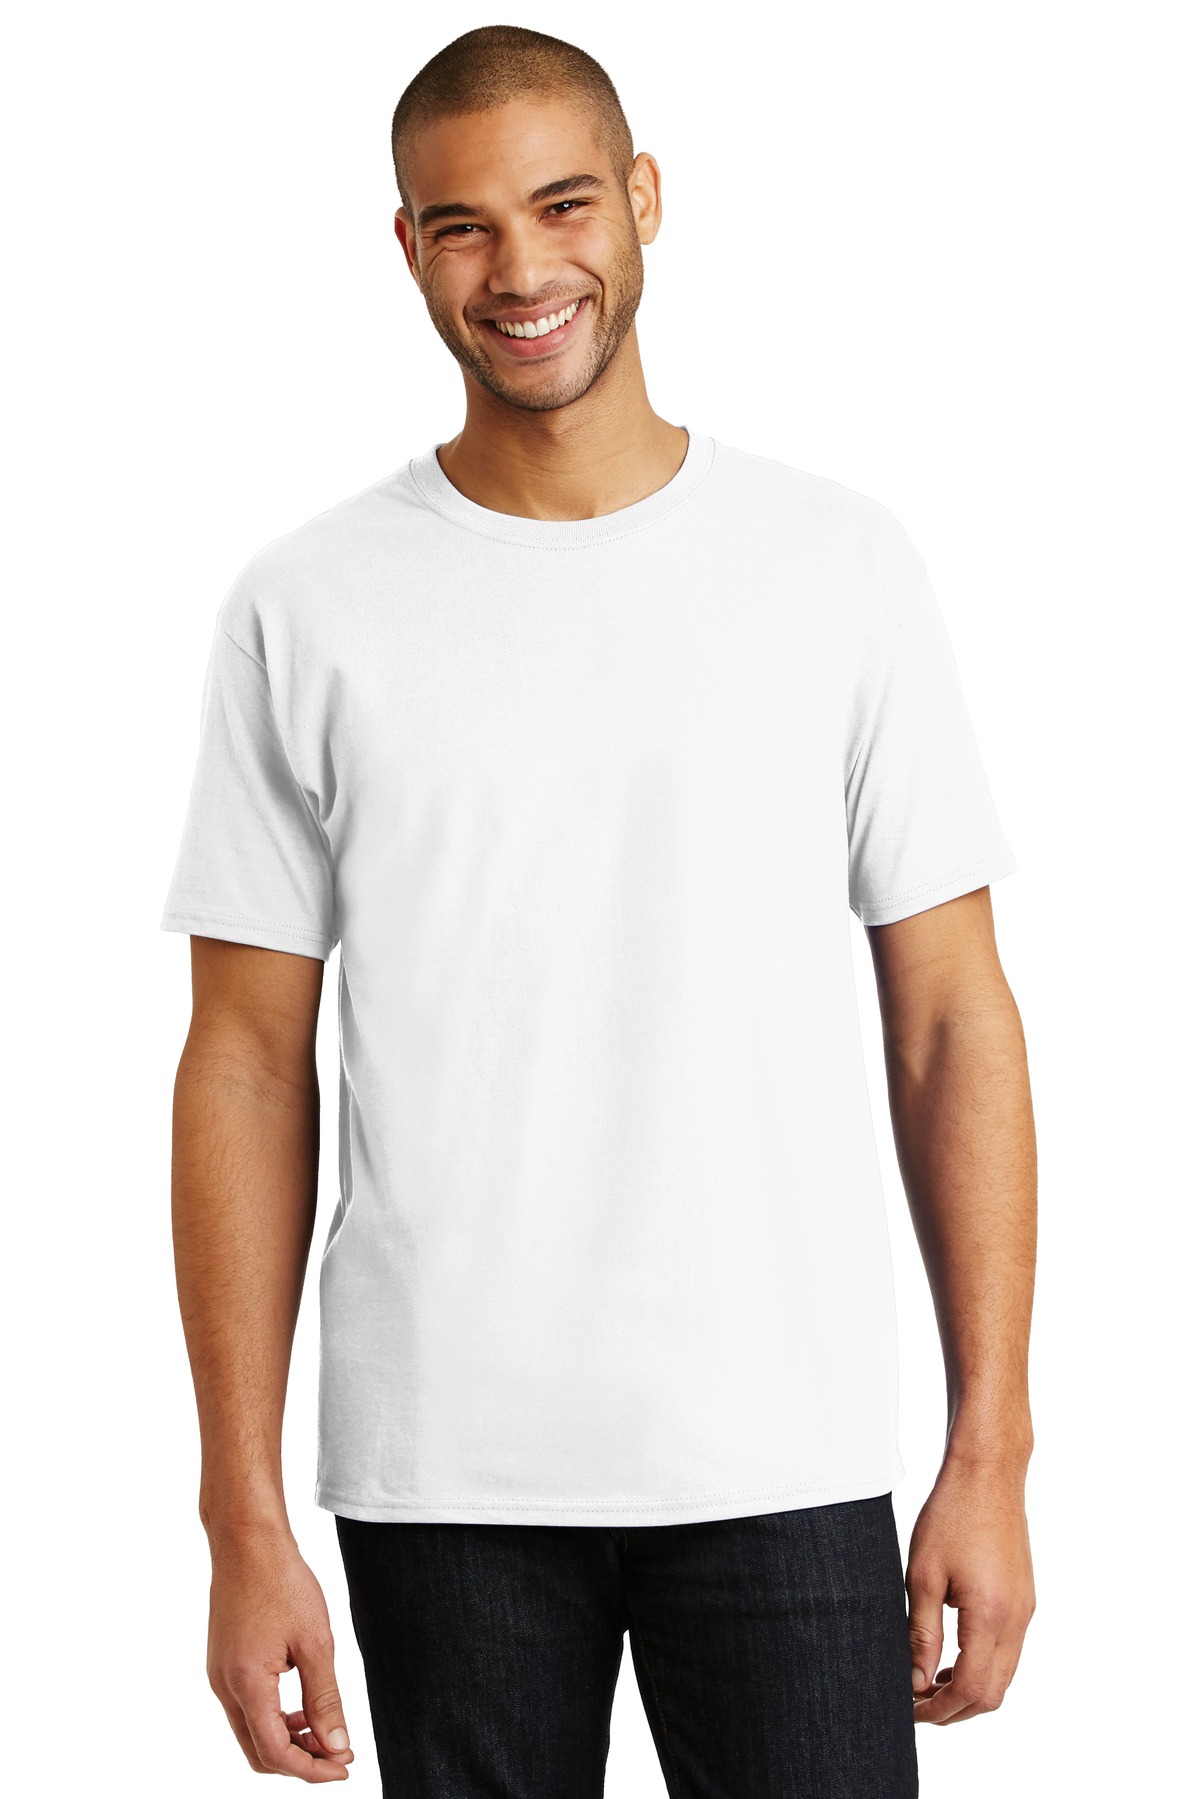 Hanes - Authentic 100% Cotton T-Shirt-